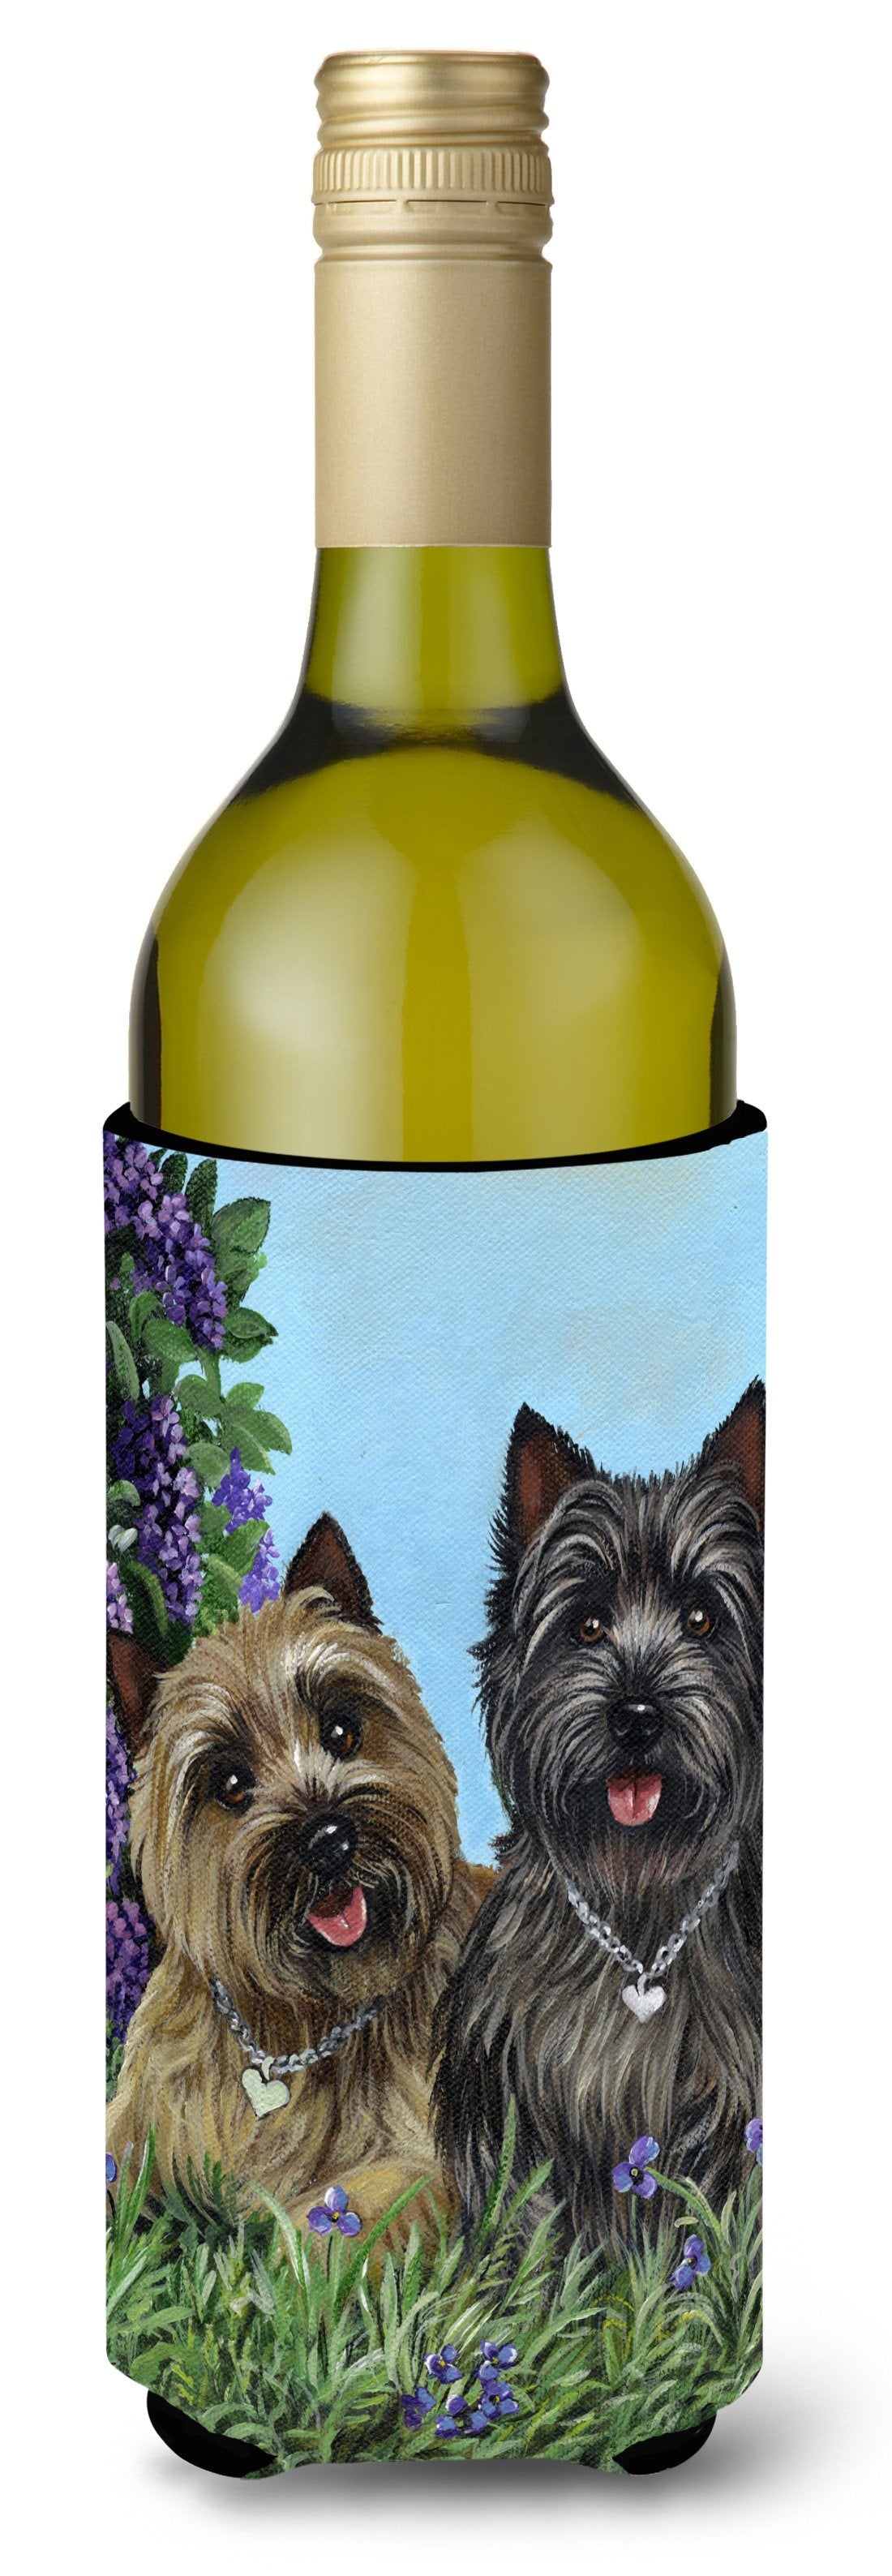 Cairn Terrier Donation Wine Bottle Hugger PPP3049LITERK by Caroline's Treasures